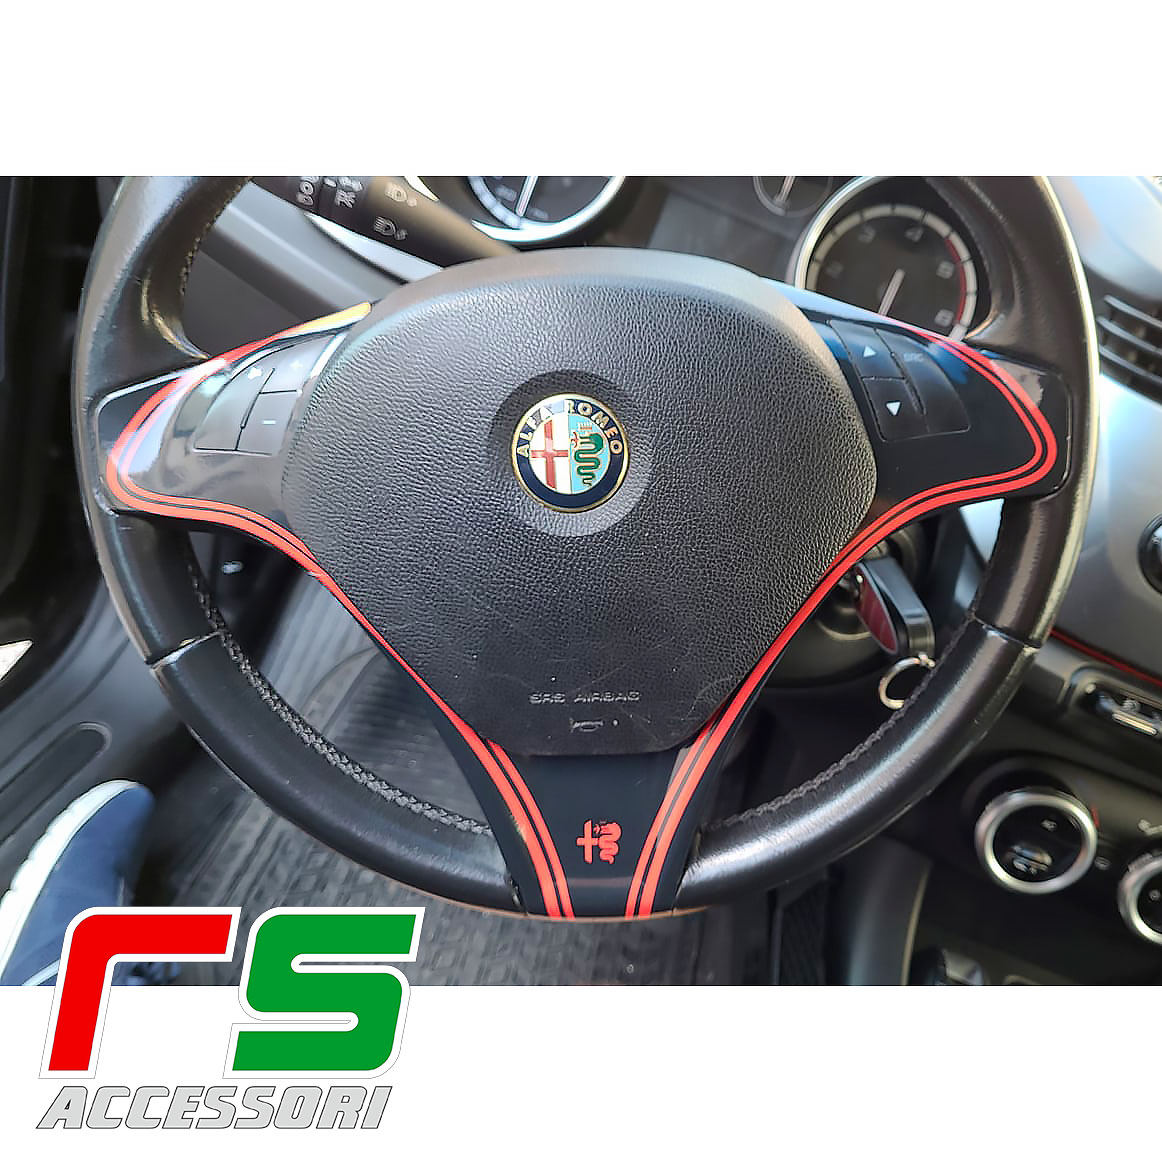 Alfa Romeo Giulietta Mito kit volante resinato - risicosfizio